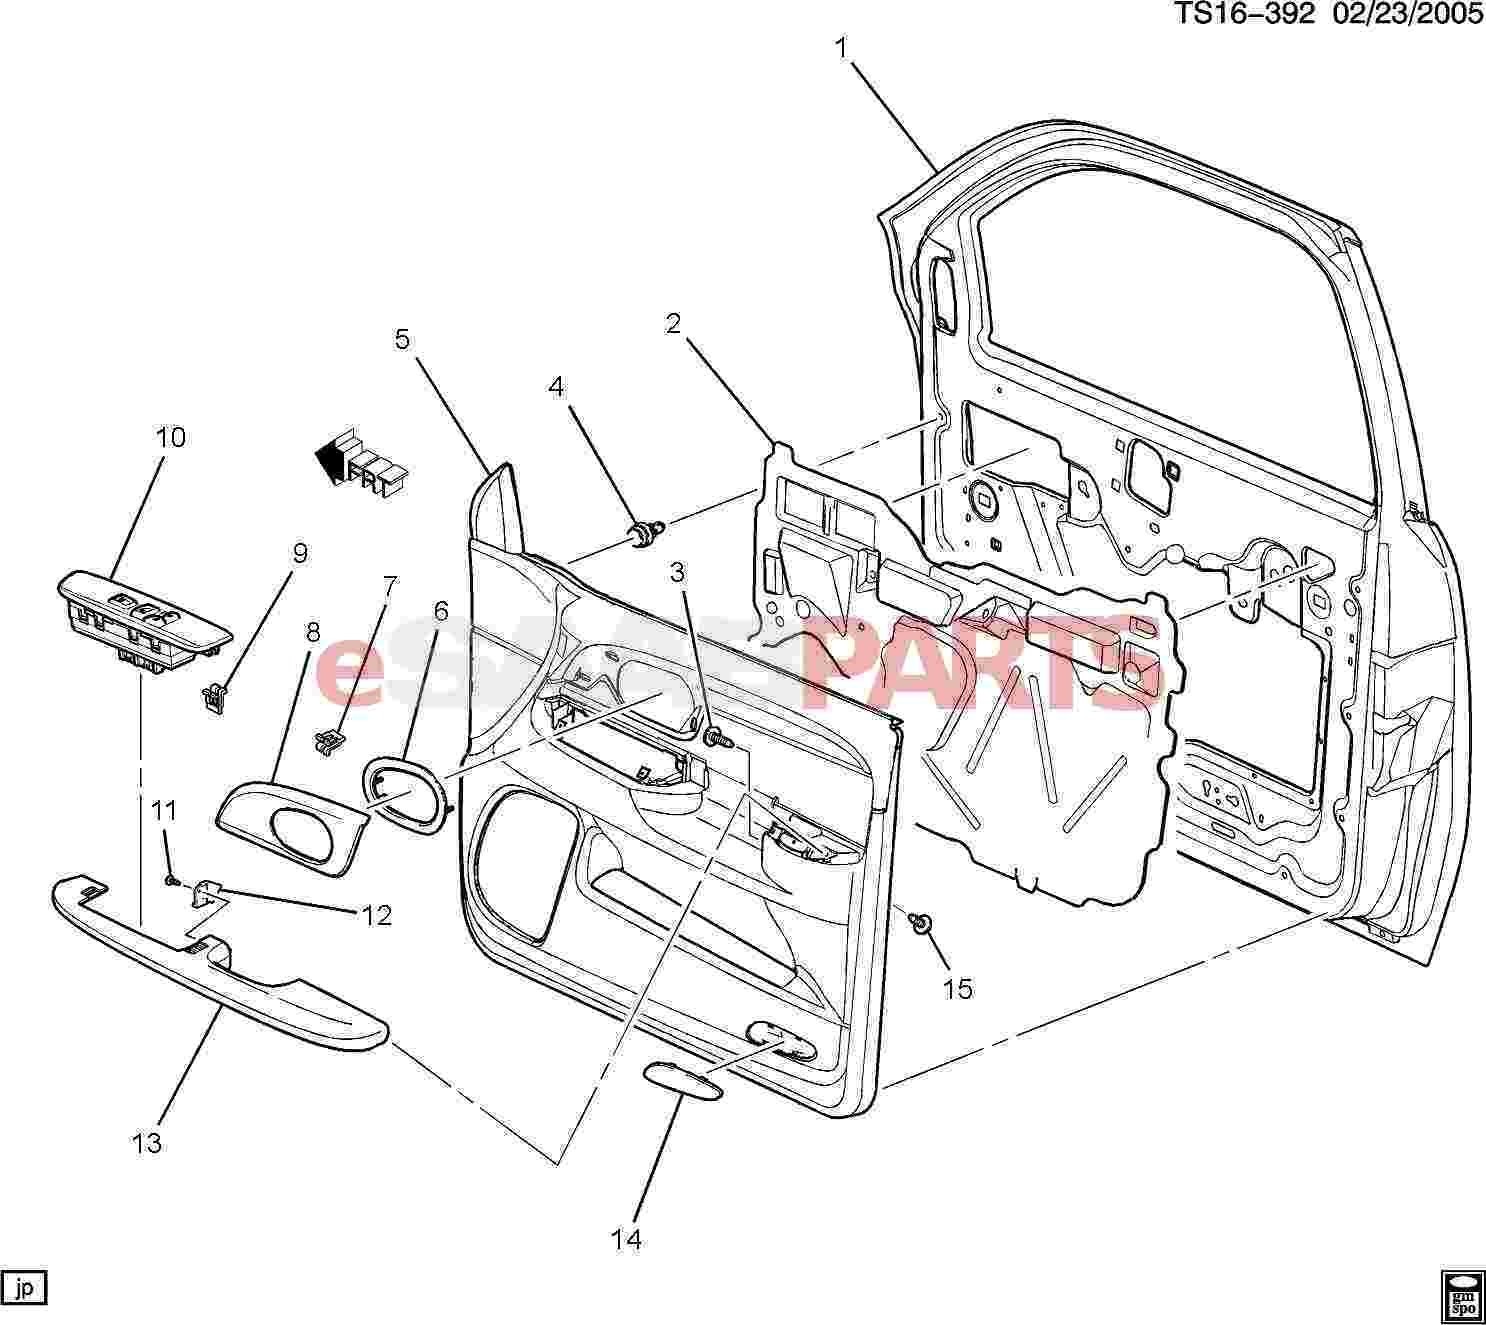 Car Parts Diagram Exterior Exterior Car Door Parts Diagram ] Saab Bolt Hwh with Fl Wa Of Car Parts Diagram Exterior